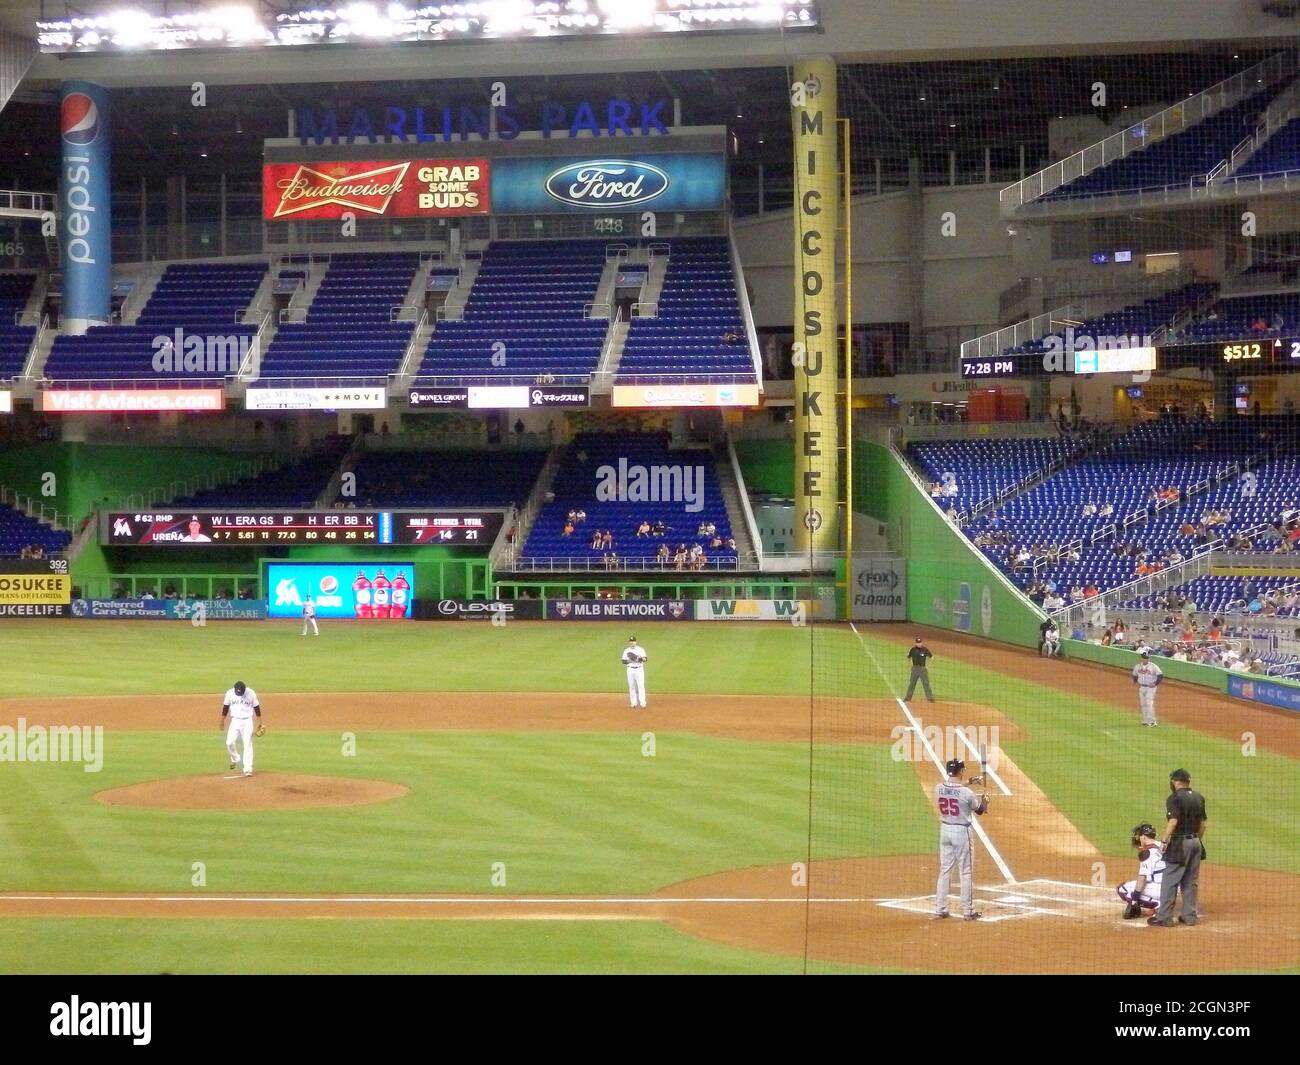 Marlins Park, stade des Miami Marlins, équipe de baseball de la Major League, Miami Florida, États-Unis Banque D'Images